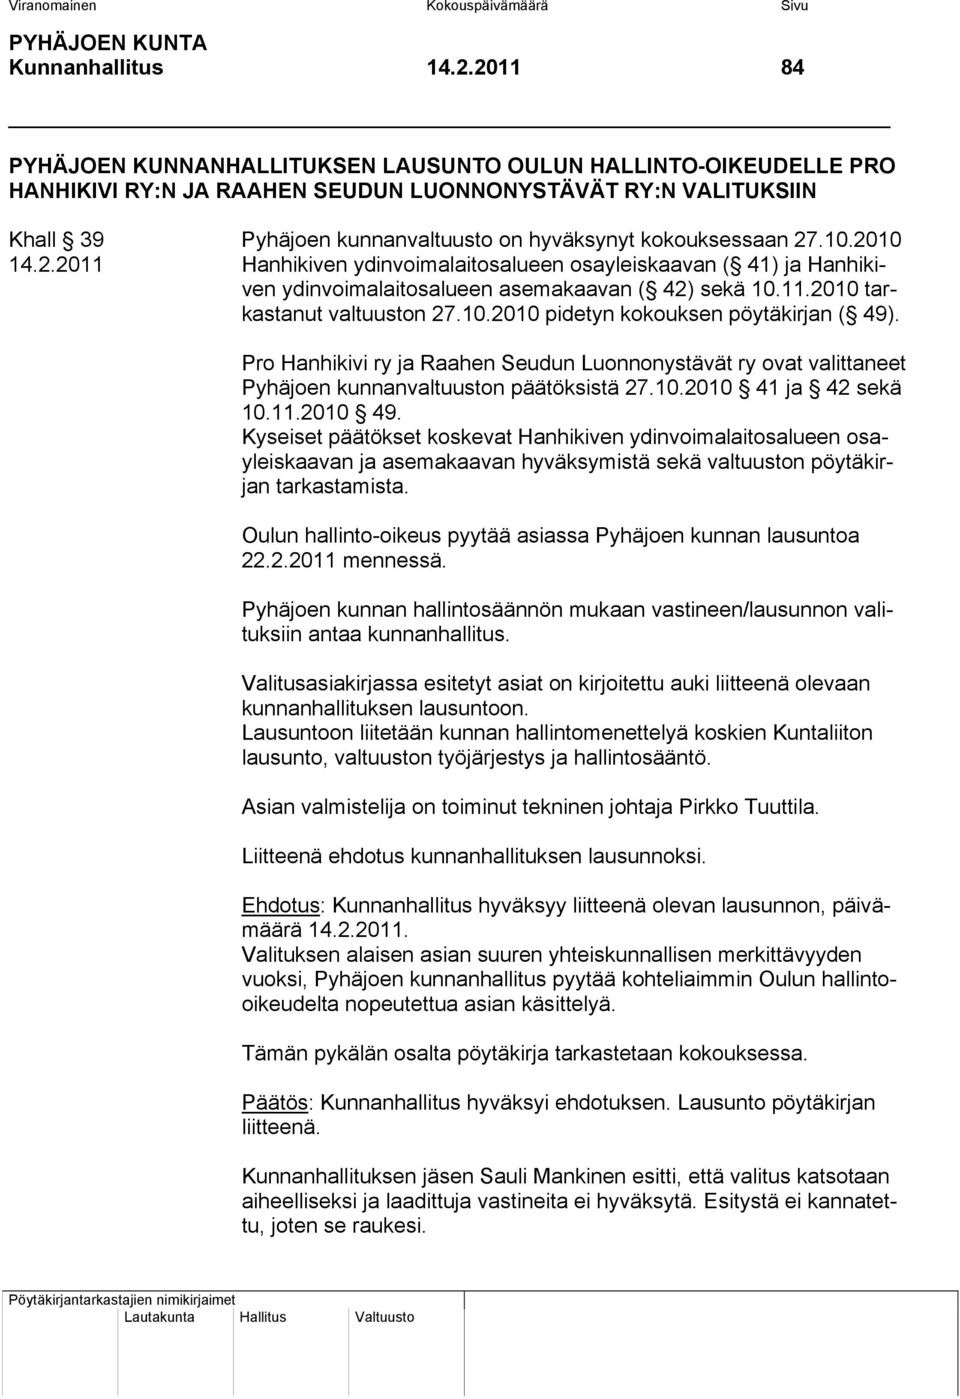 27.10.2010 14.2.2011 Hanhikiven ydinvoimalaitosalueen osayleiskaavan ( 41) ja Hanhikiven ydinvoimalaitosalueen asemakaavan ( 42) sekä 10.11.2010 tarkastanut valtuuston 27.10.2010 pidetyn kokouksen pöytäkirjan ( 49).